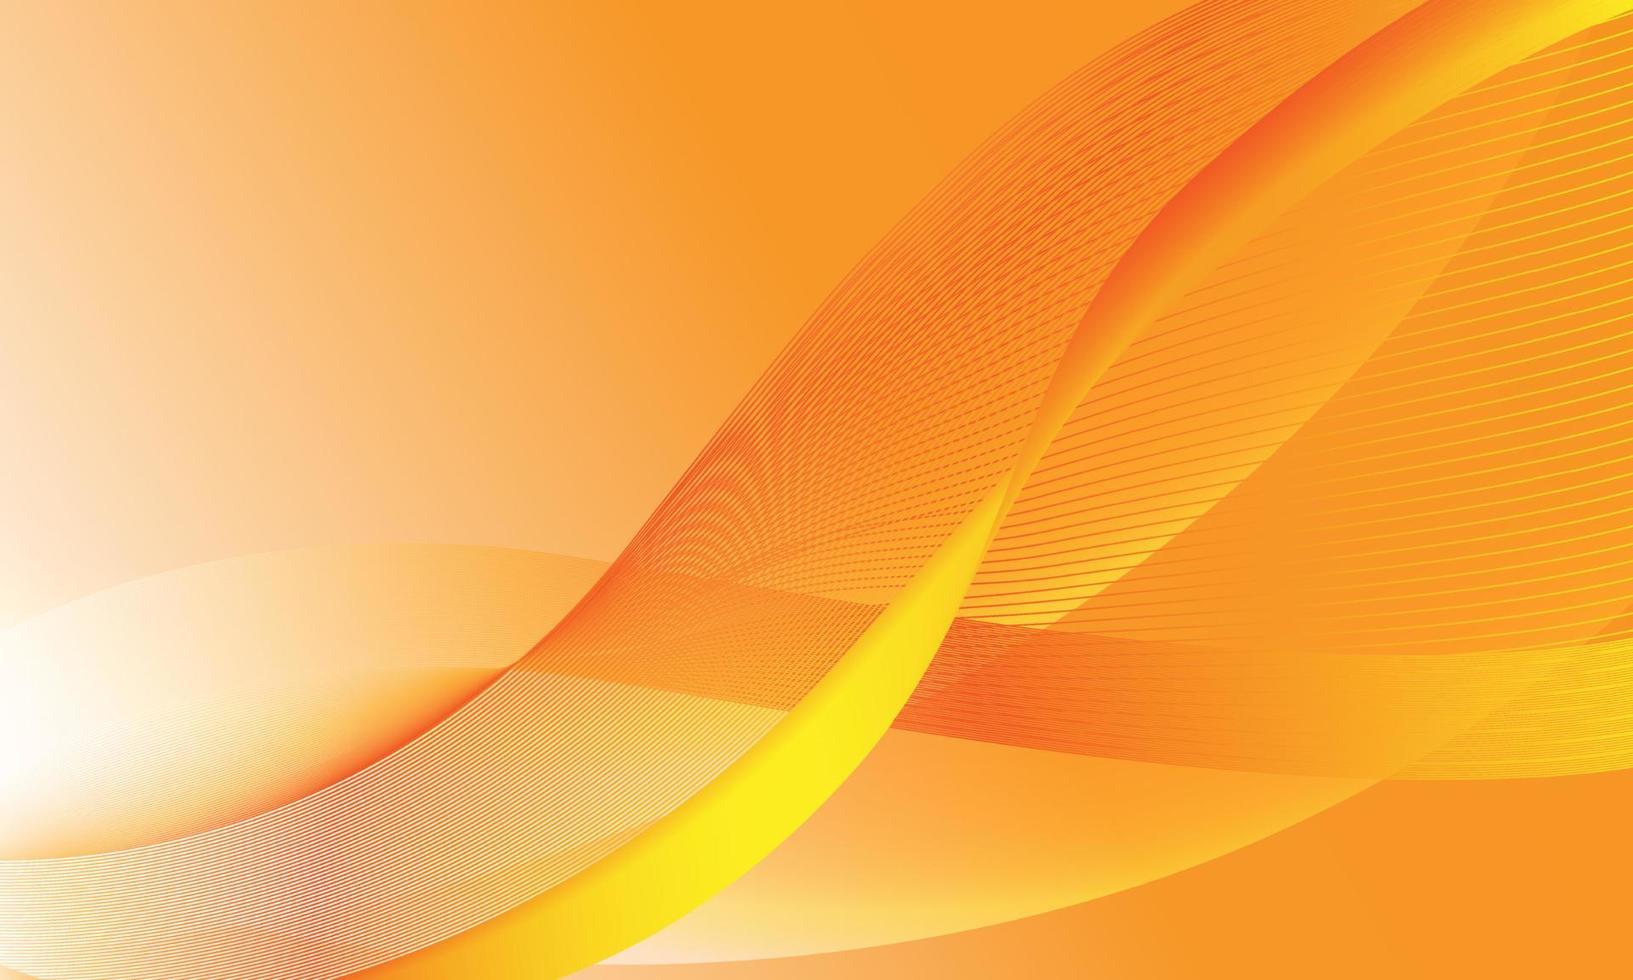 ilustração em vetor fundo abstrato ondulado laranja. vetor de fundo onda gradiente laranja suave.